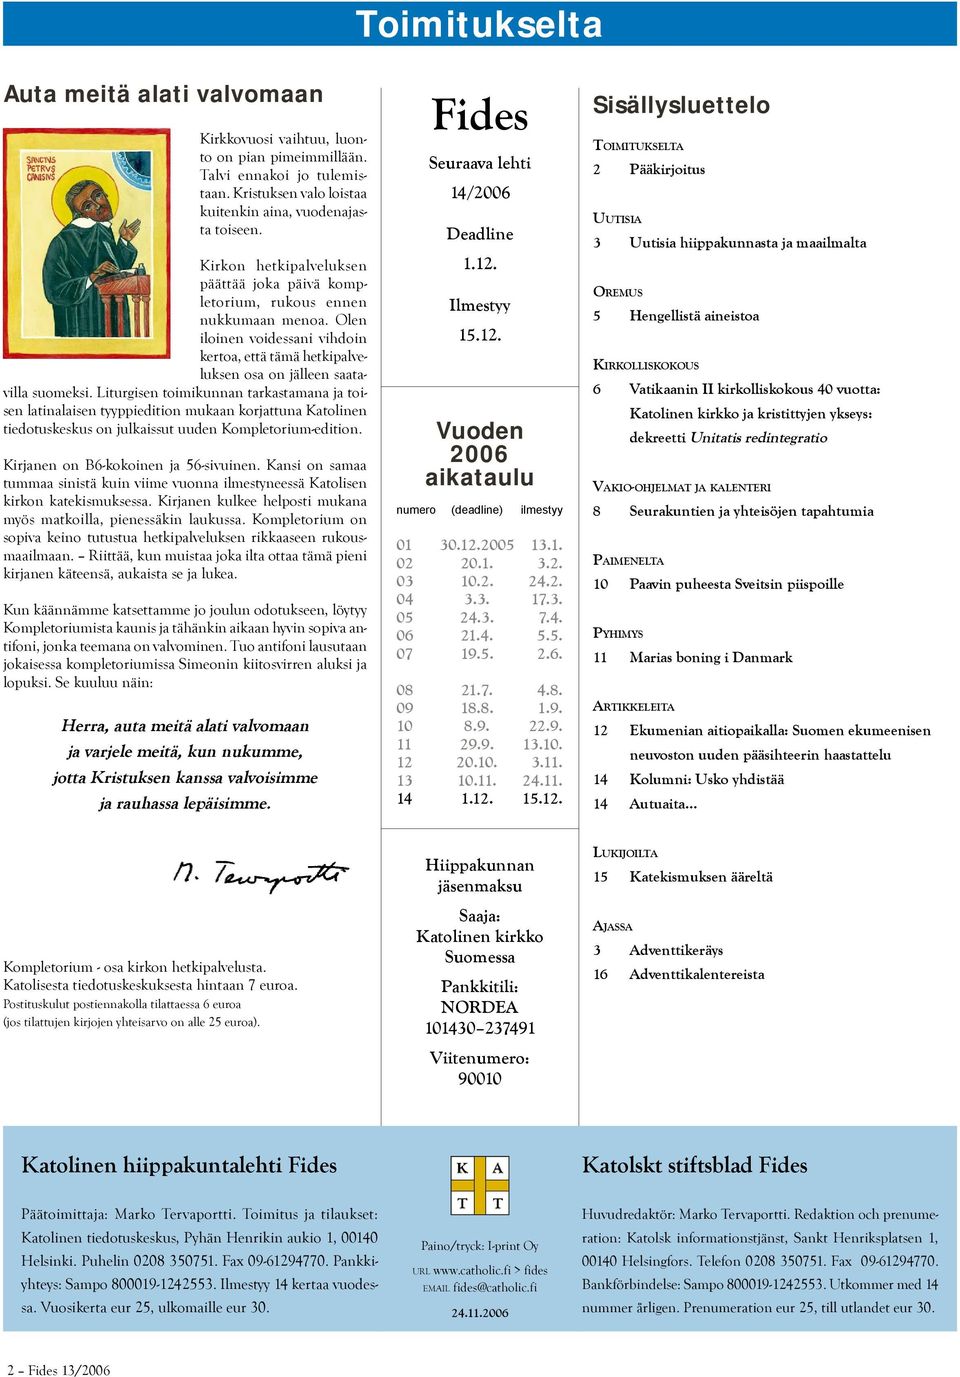 Liturgisen toimikunnan tarkastamana ja toisen latinalaisen tyyppiedition mukaan korjattuna Katolinen tiedotuskeskus on julkaissut uuden Kompletorium-edition. Kirjanen on B6-kokoinen ja 56-sivuinen.